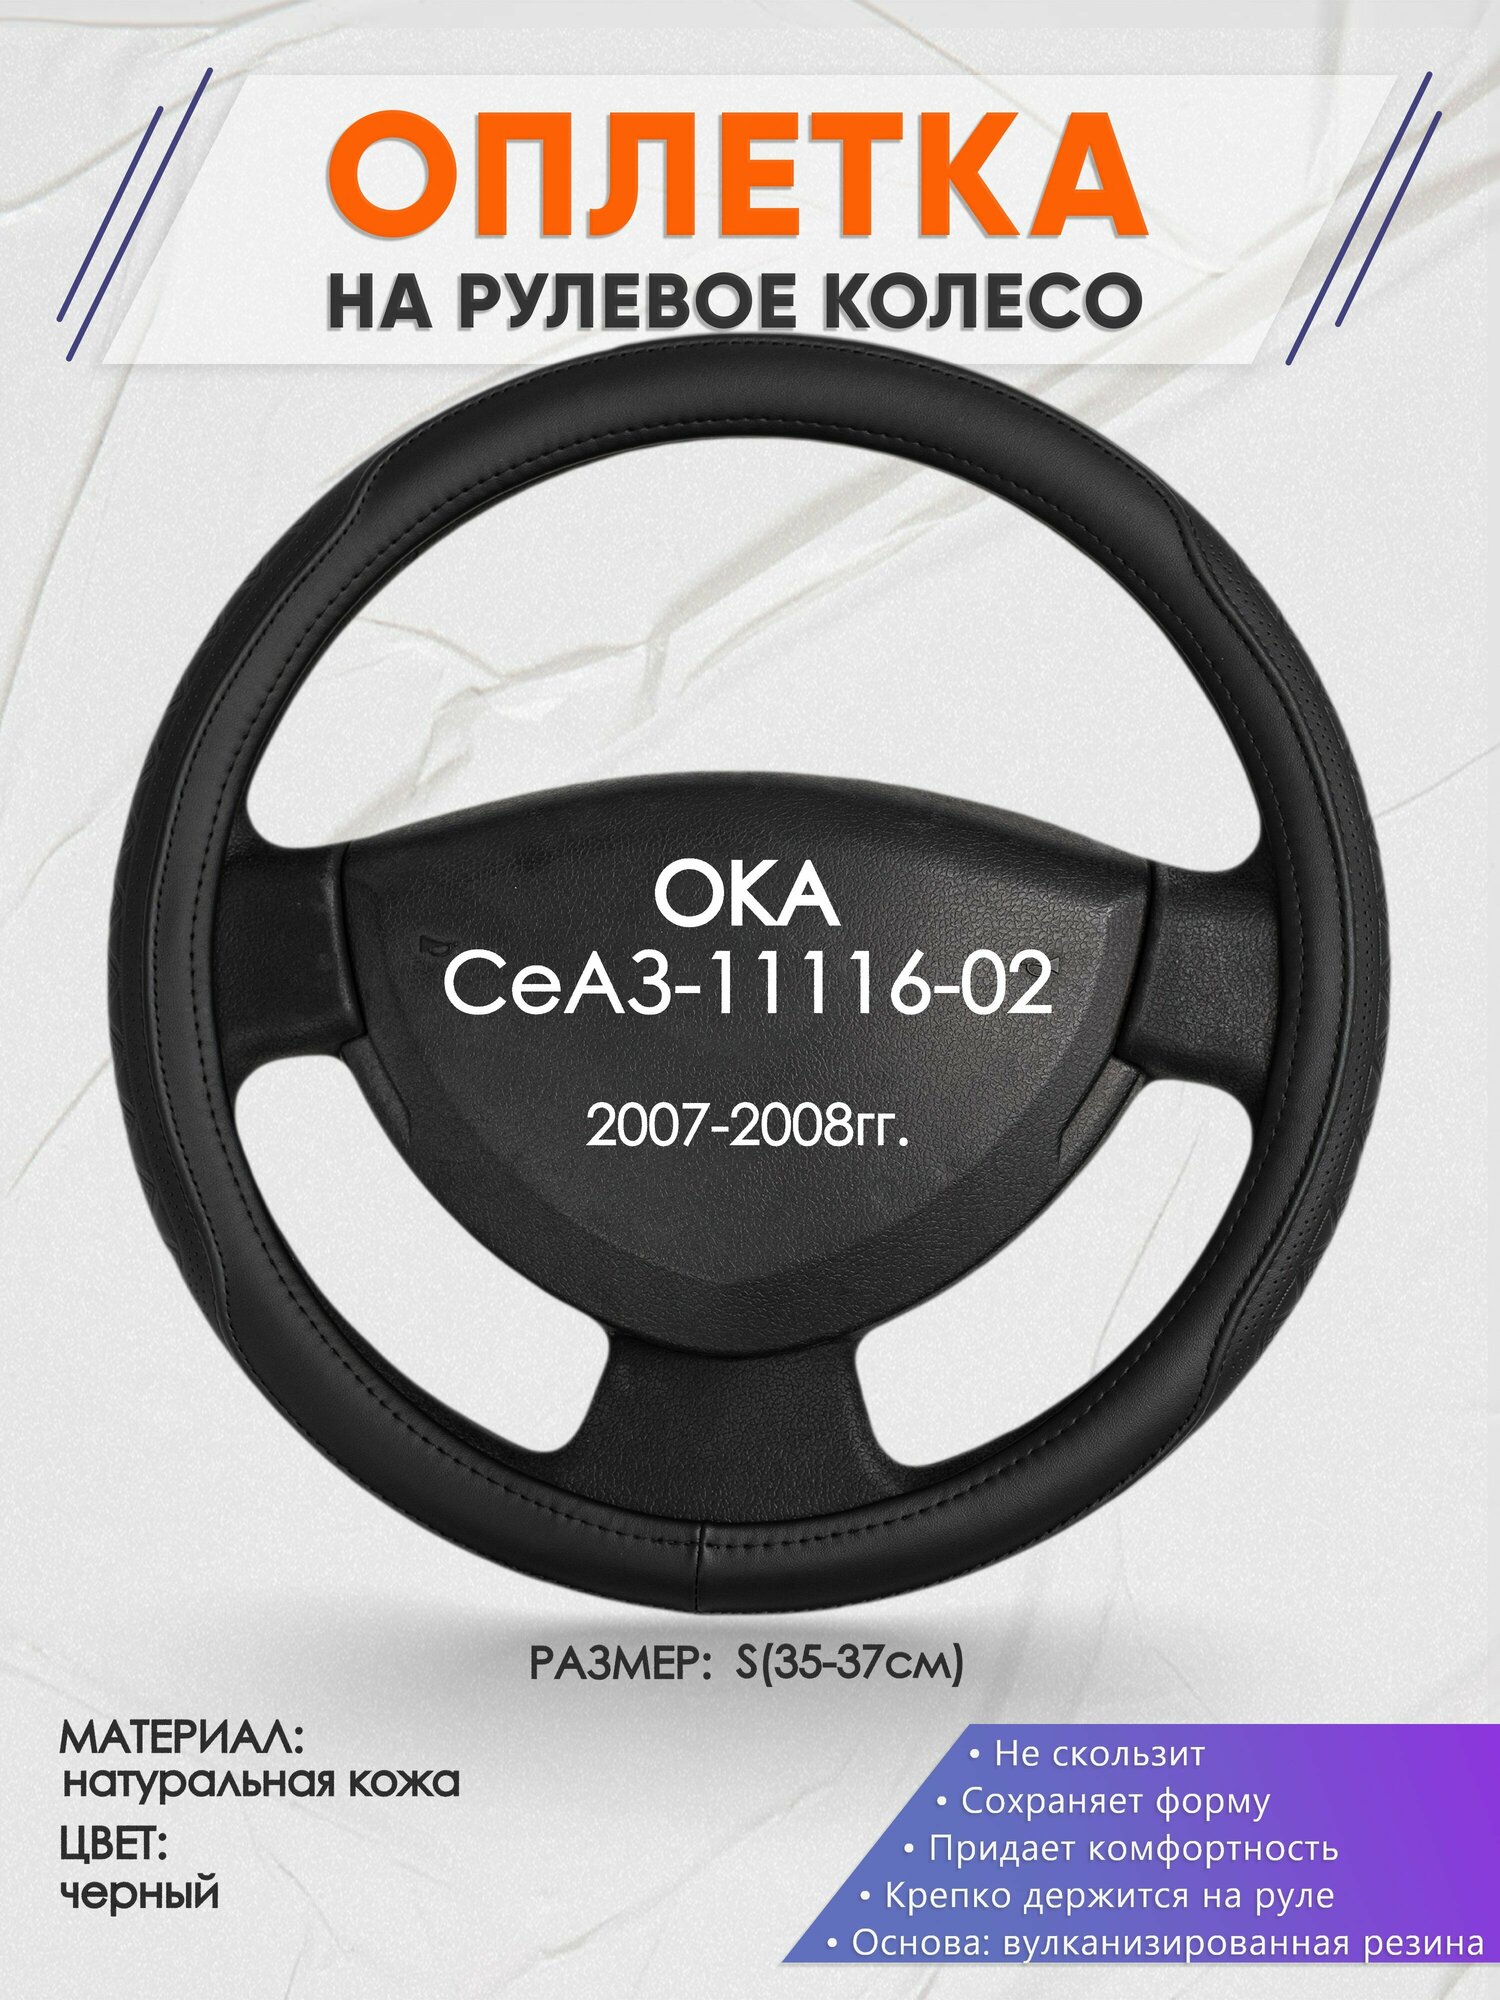 Оплетка на руль для ОКА СеАЗ-11116-02(ОКА ) 2007-2008, S(35-37см), Натуральная кожа 28